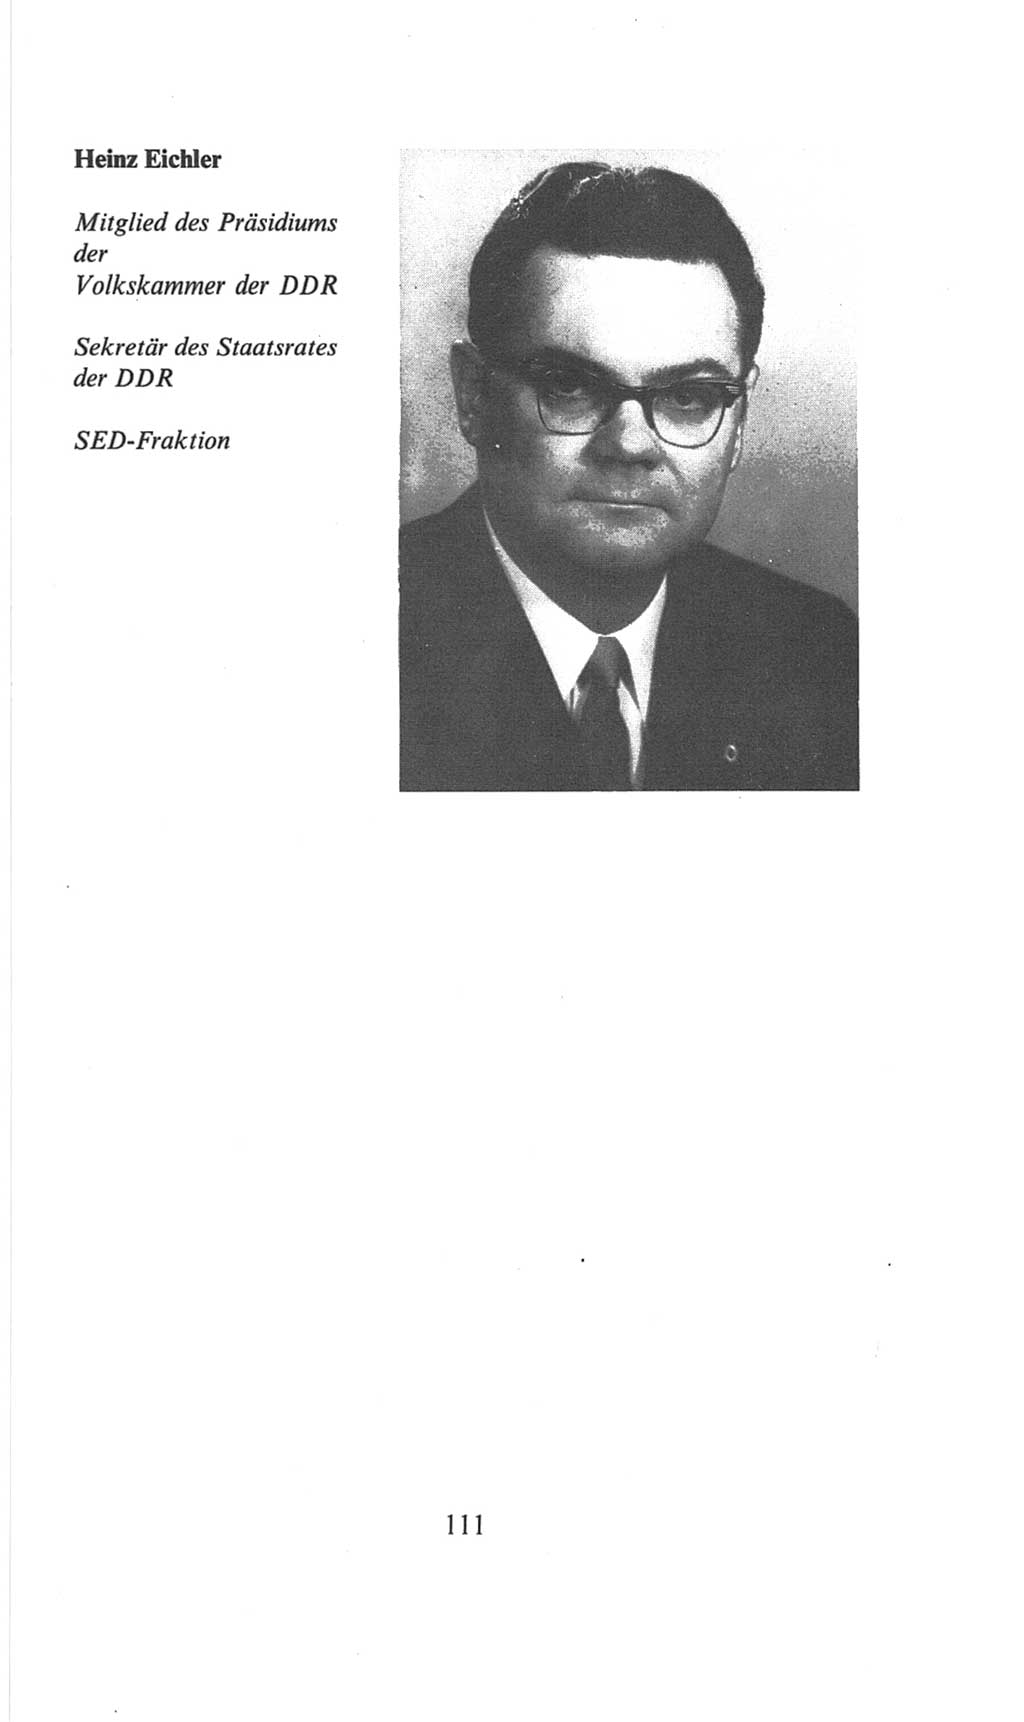 Volkskammer (VK) der Deutschen Demokratischen Republik (DDR), 6. Wahlperiode 1971-1976, Seite 111 (VK. DDR 6. WP. 1971-1976, S. 111)